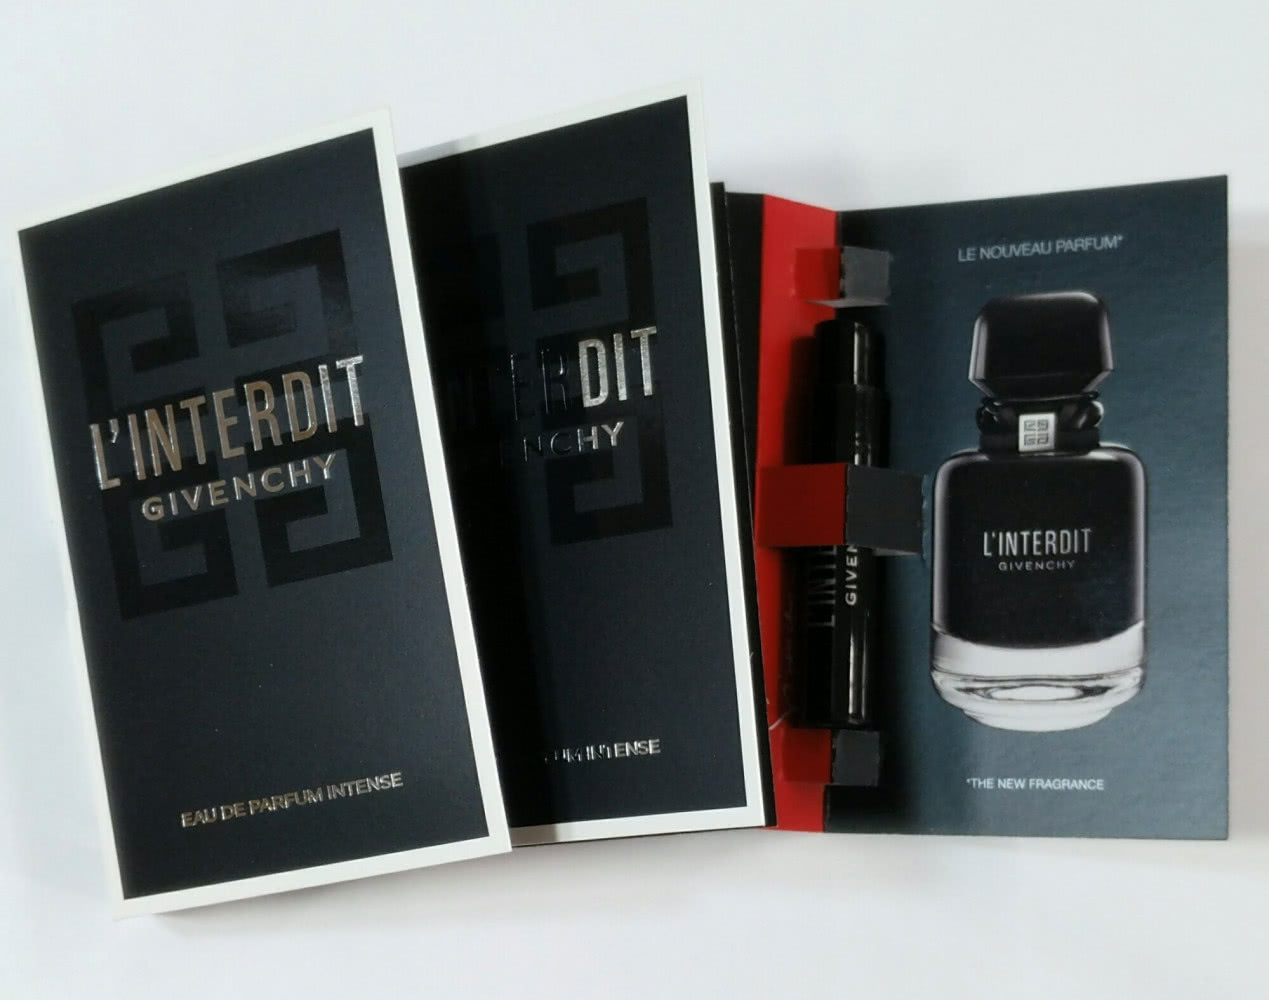 Givenchy L'Interdit Eau De Parfum Intense Интенсивная парфюмерная вода.